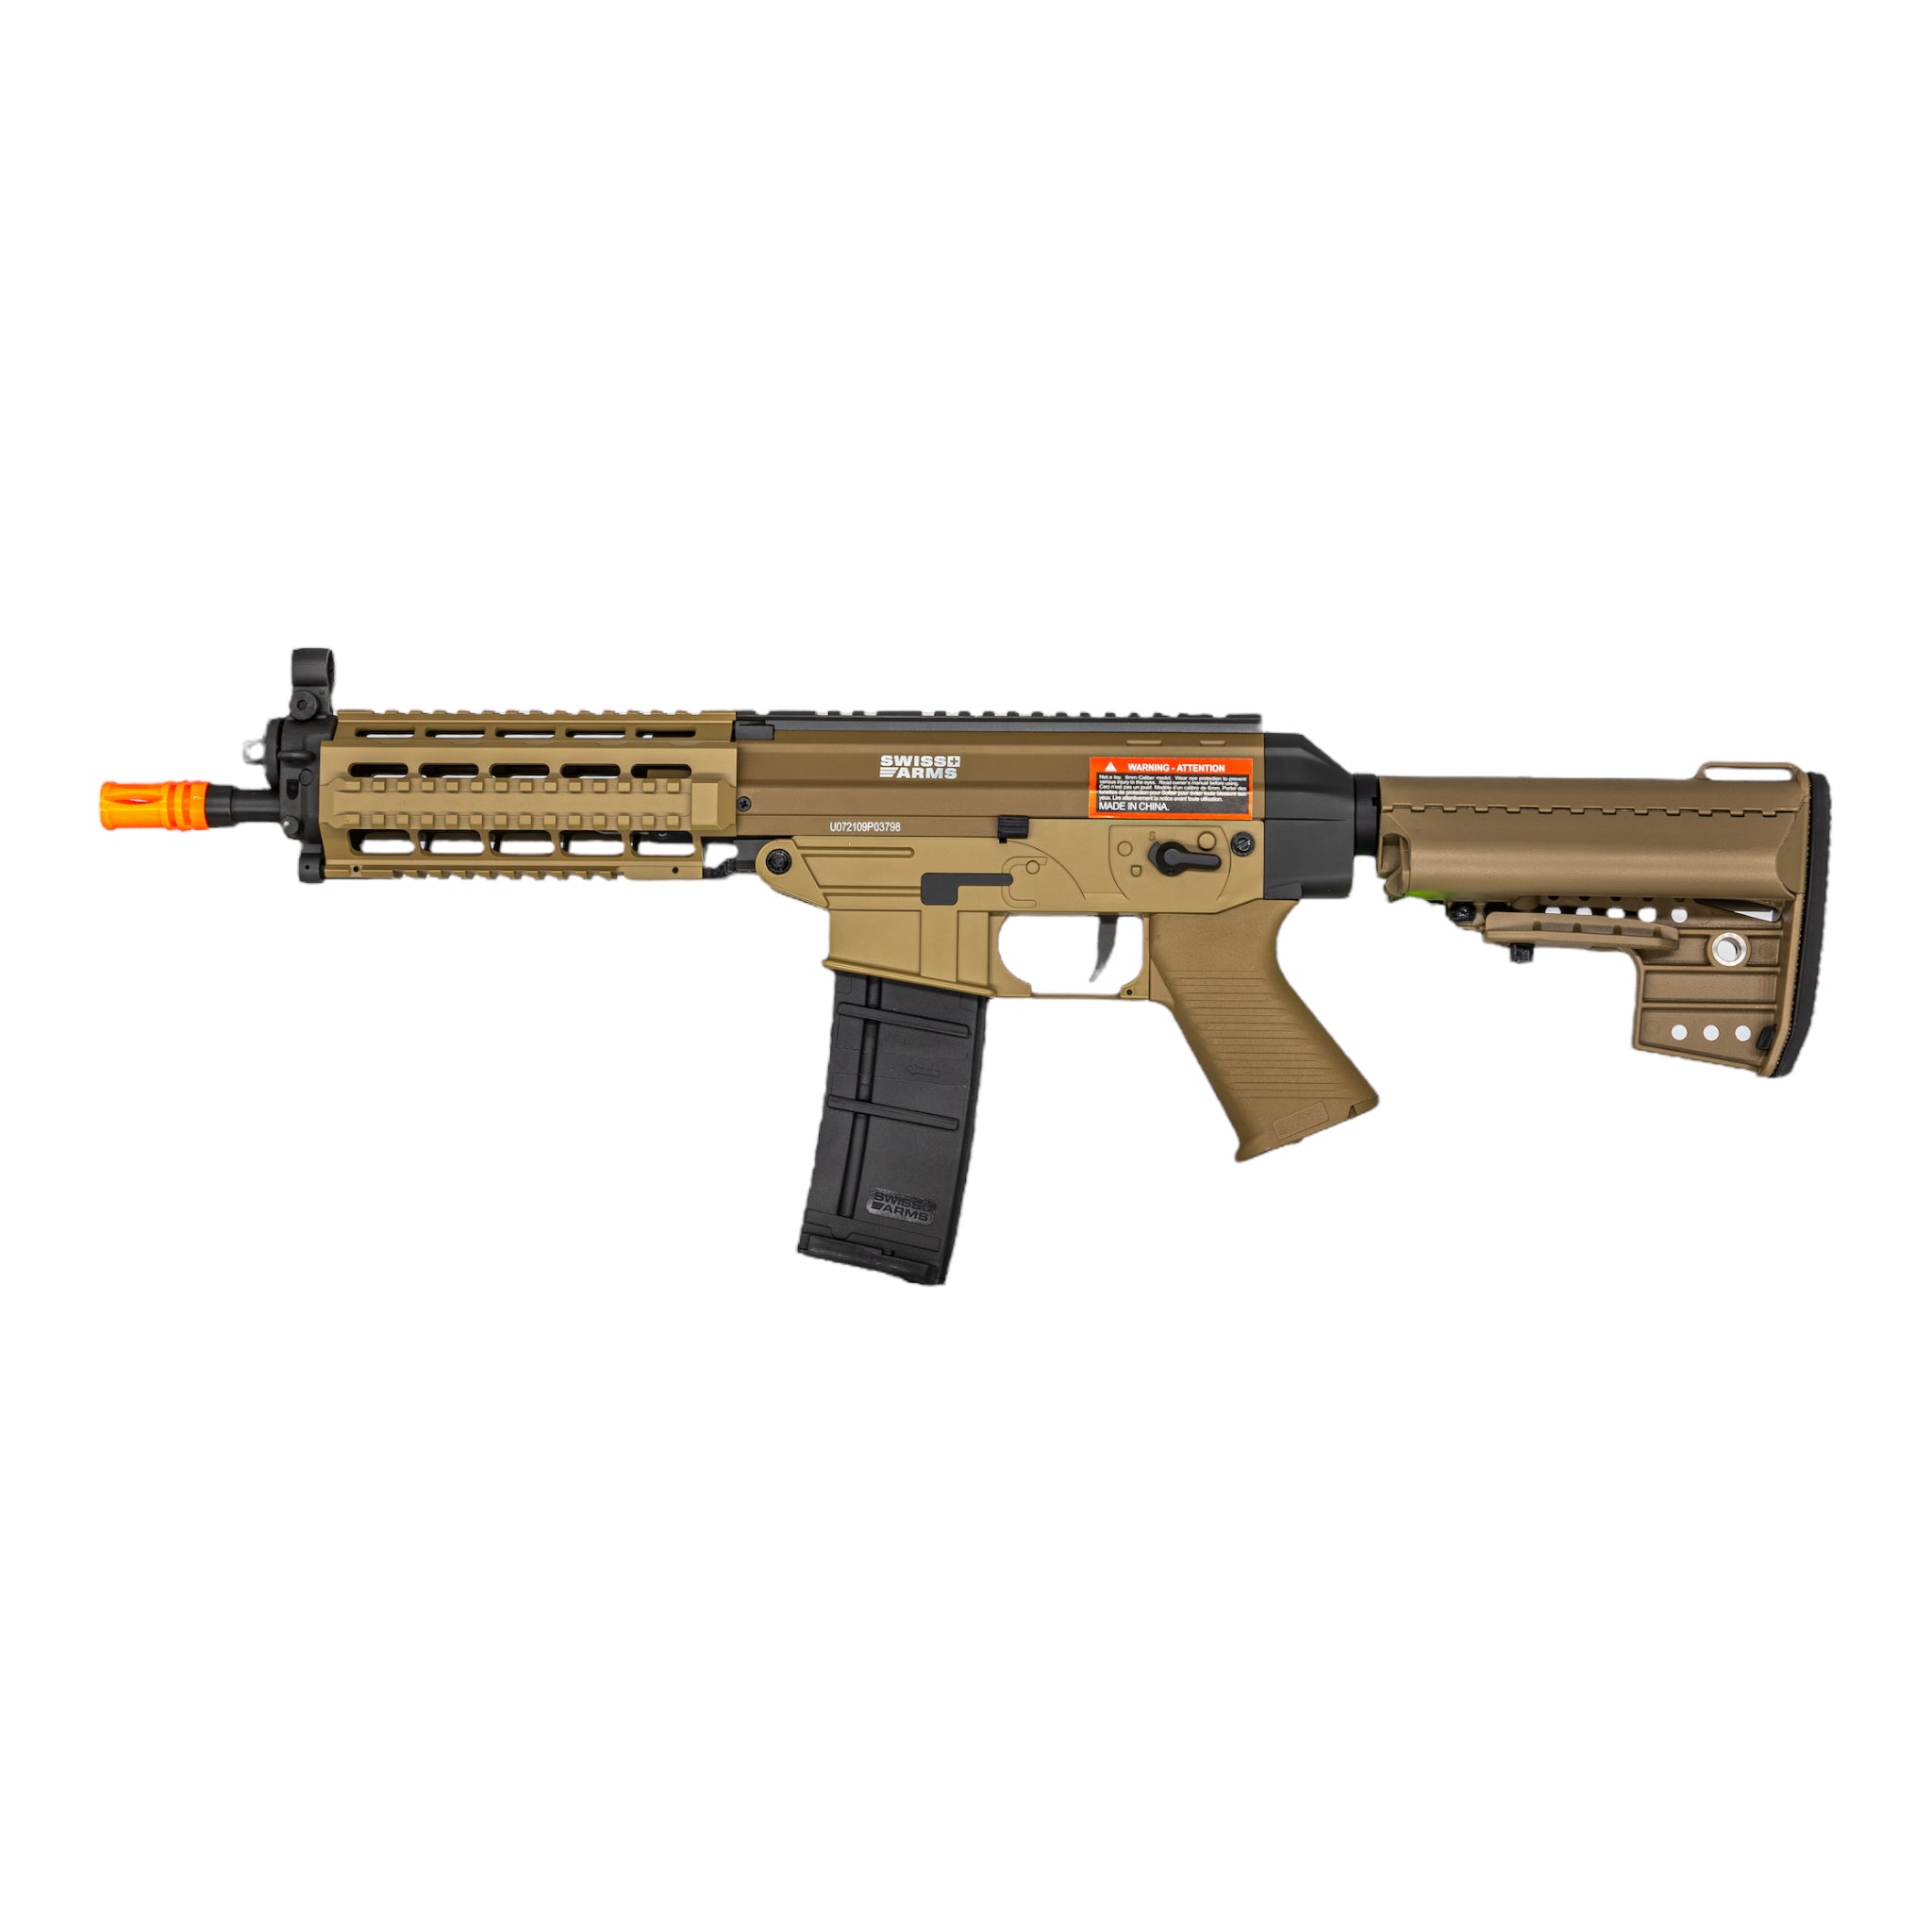 Cybergun / Swiss Arms Tan SBR SG556 RIS Airsoft AEG Rifle